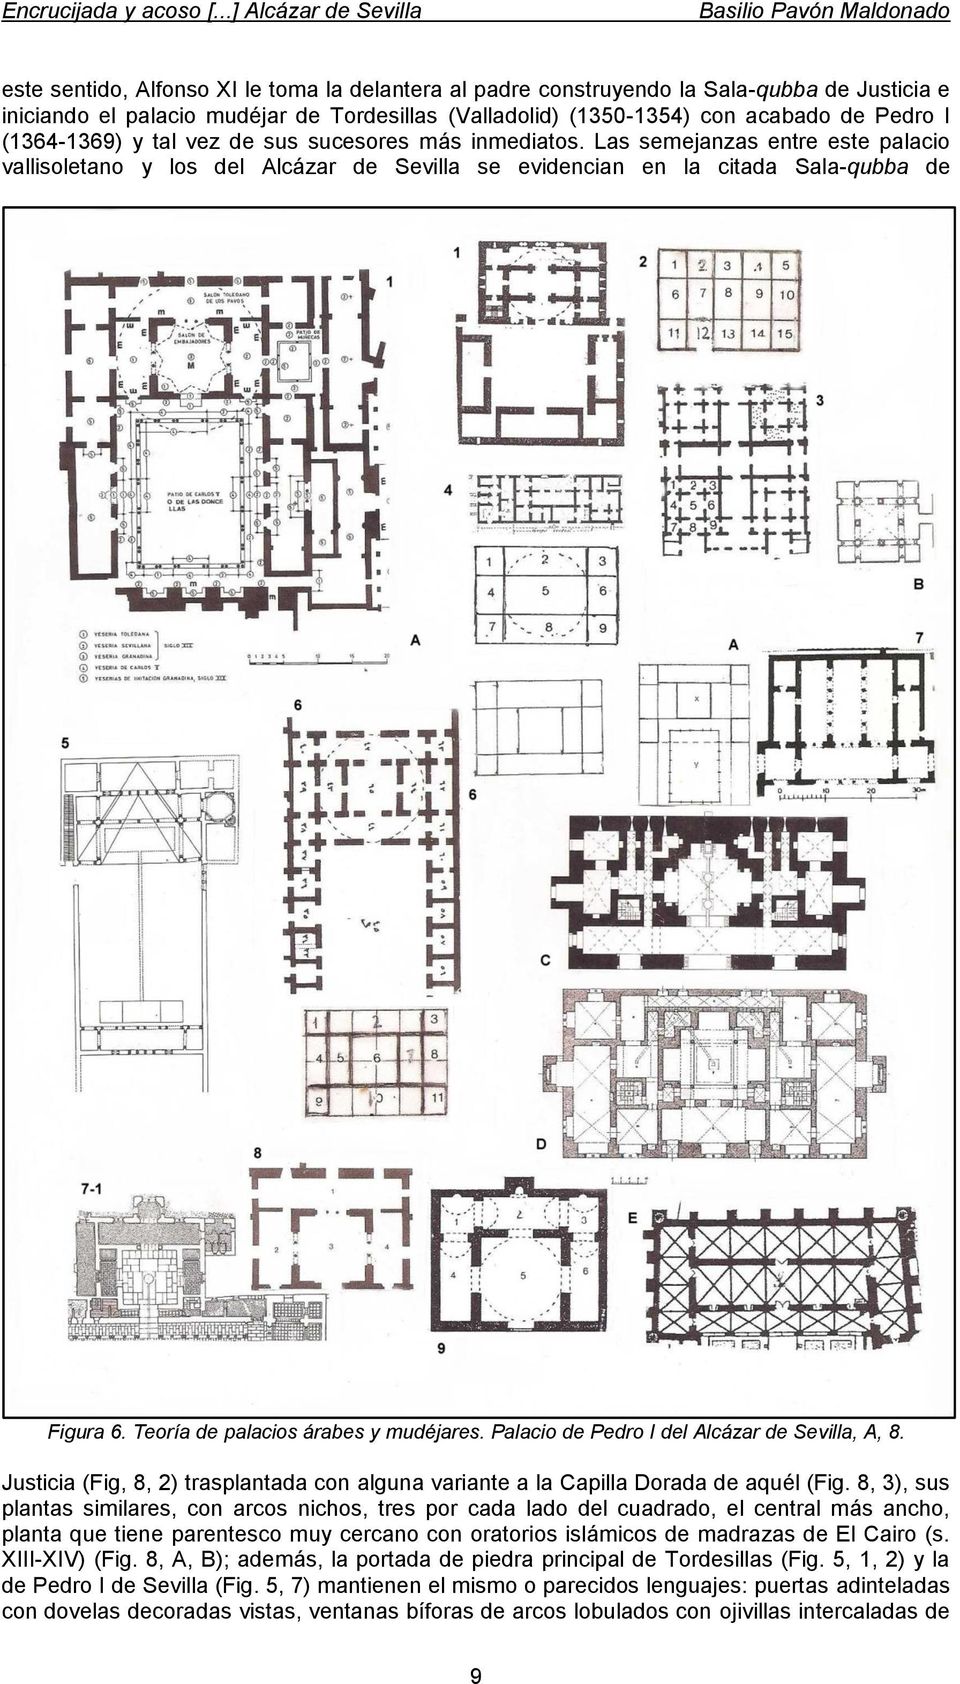 Teoría de palacios árabes y mudéjares. Palacio de Pedro I del Alcázar de Sevilla, A, 8. Justicia (Fig, 8, 2) trasplantada con alguna variante a la Capilla Dorada de aquél (Fig.